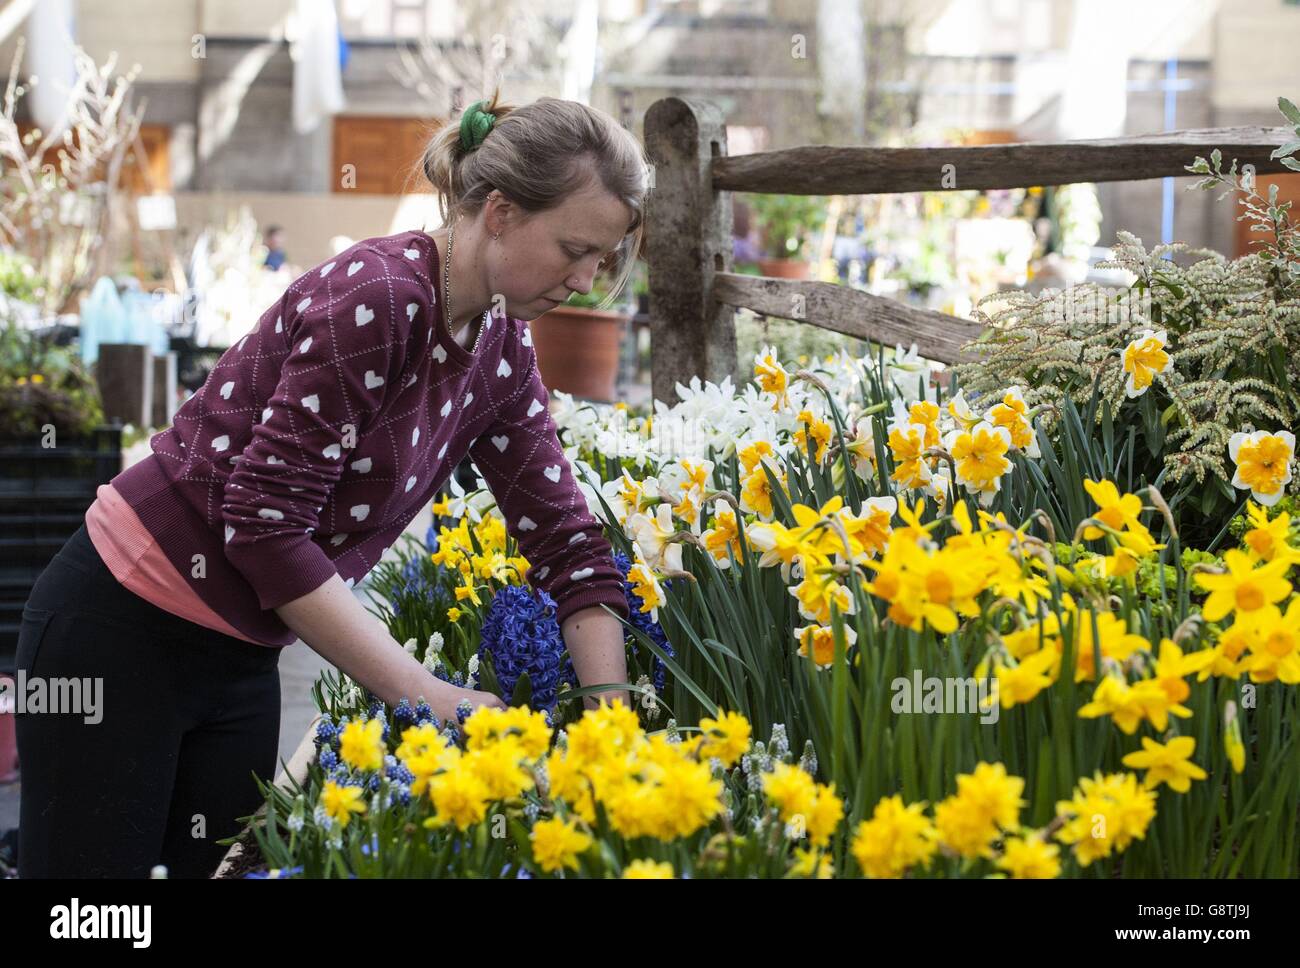 Un exposant organise des fleurs devant le RHS London Spring Plant Extravaganza qui présente le RHS Orchid Show au RHS Horticultural Halls de Londres. Banque D'Images